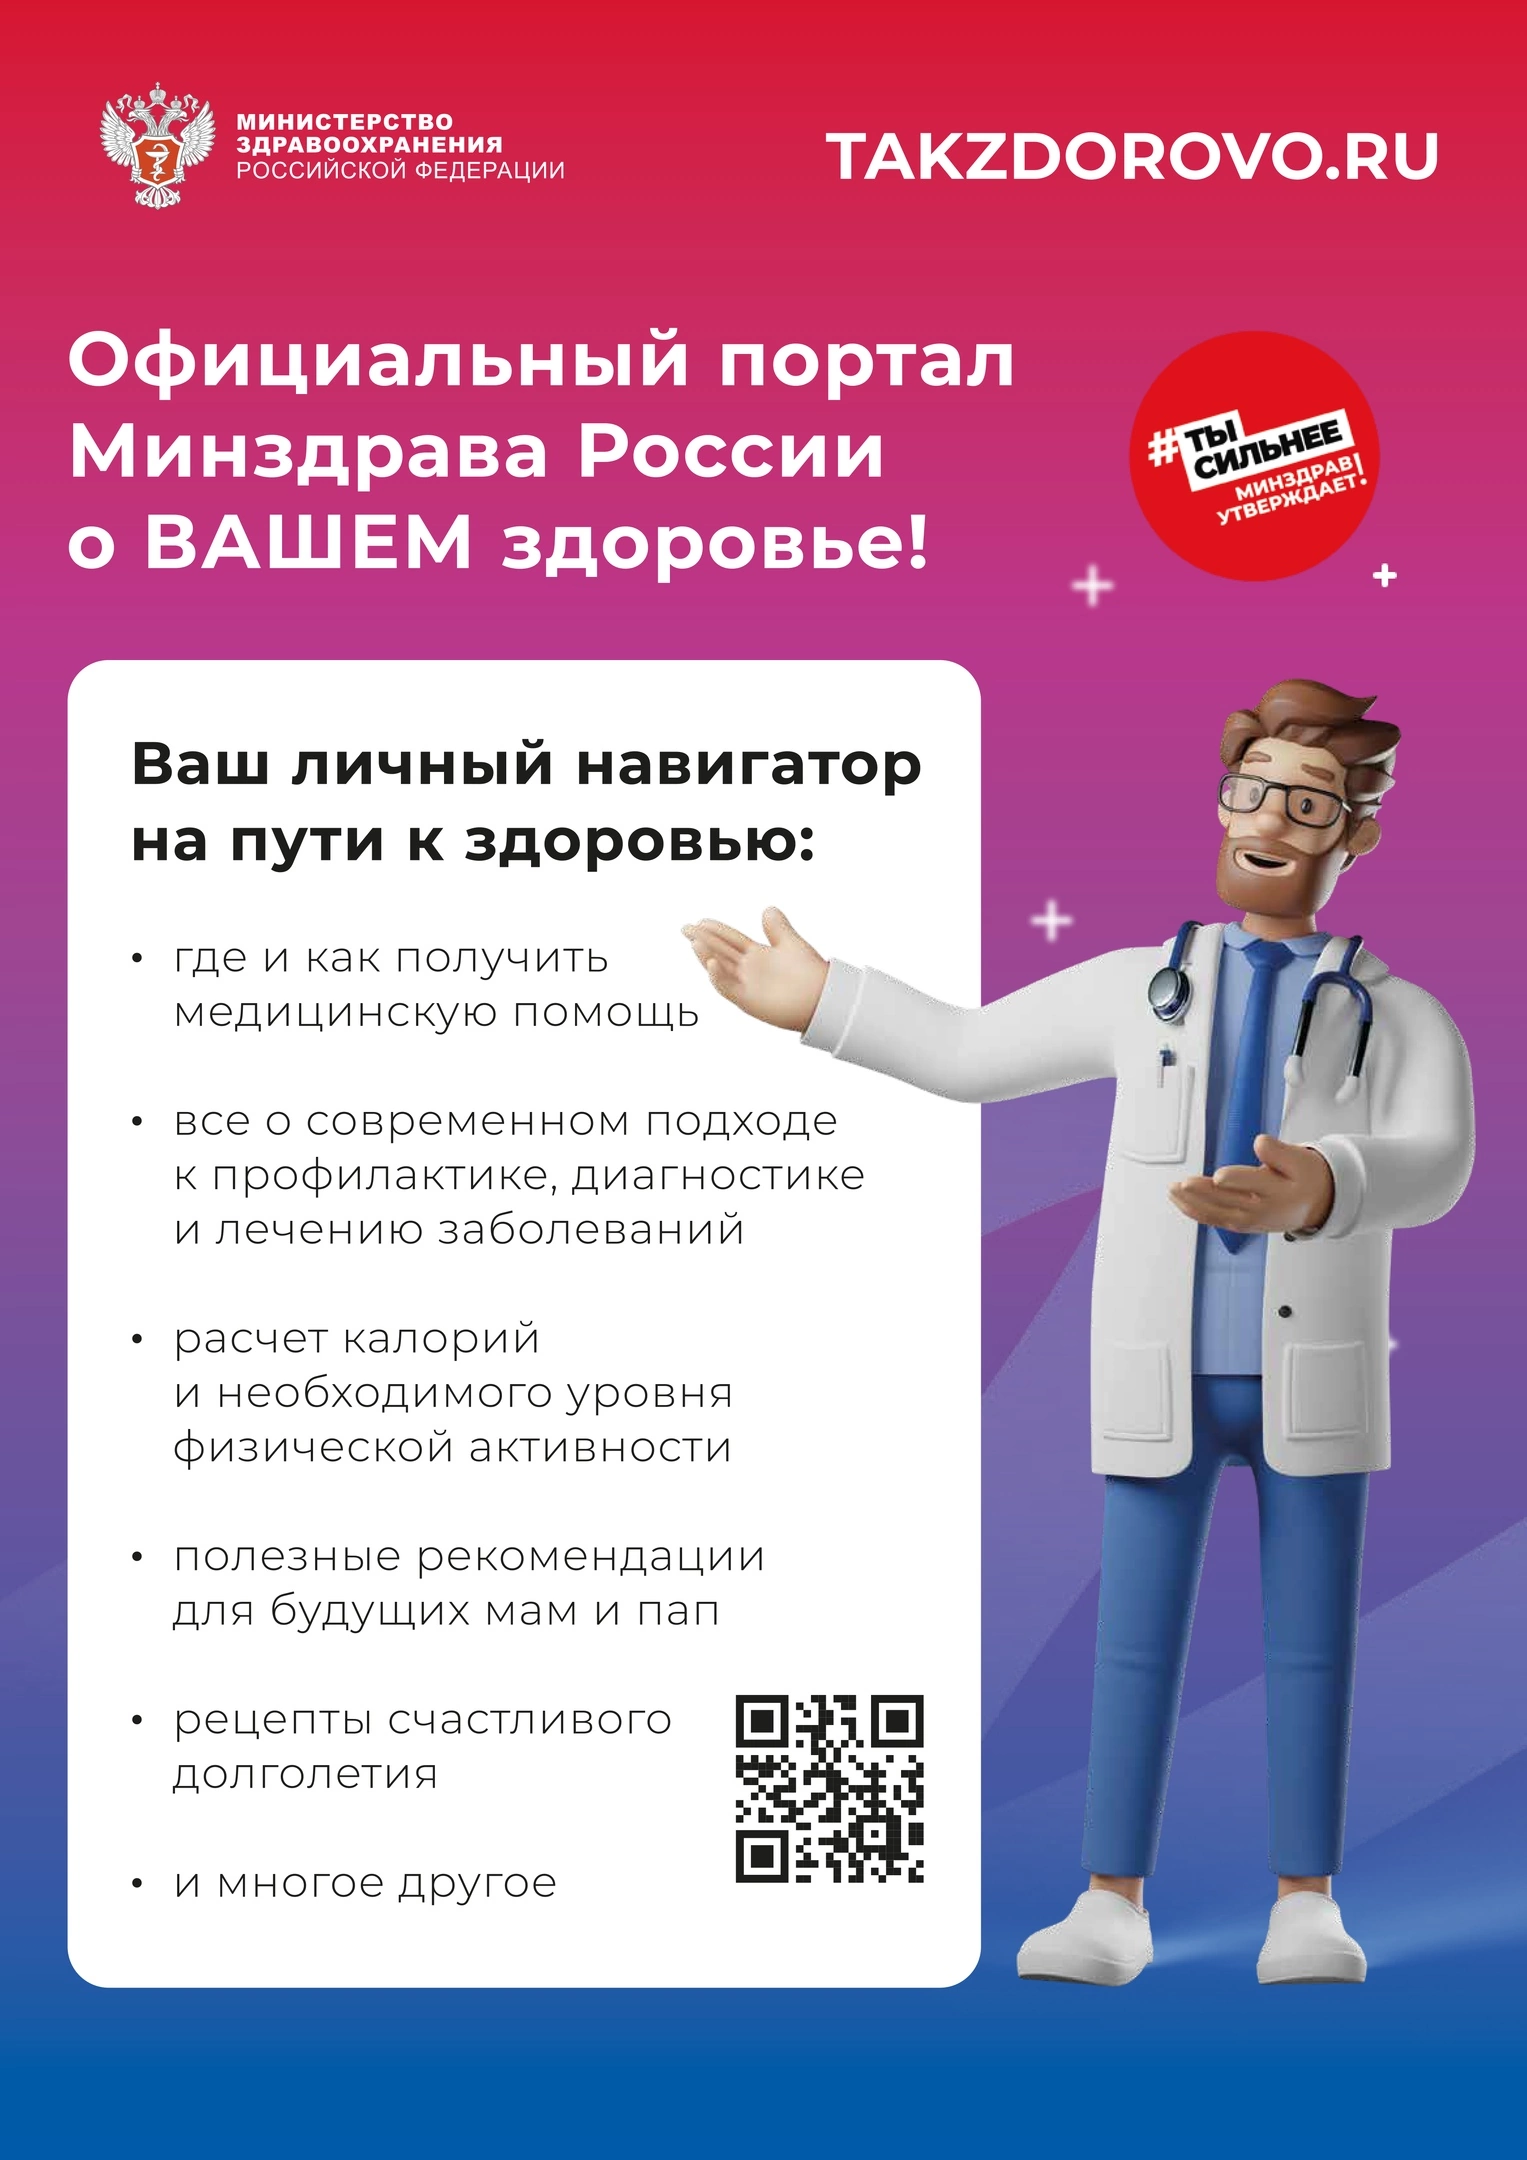 Официальный портал Минздрава России о Вашем здоровье!